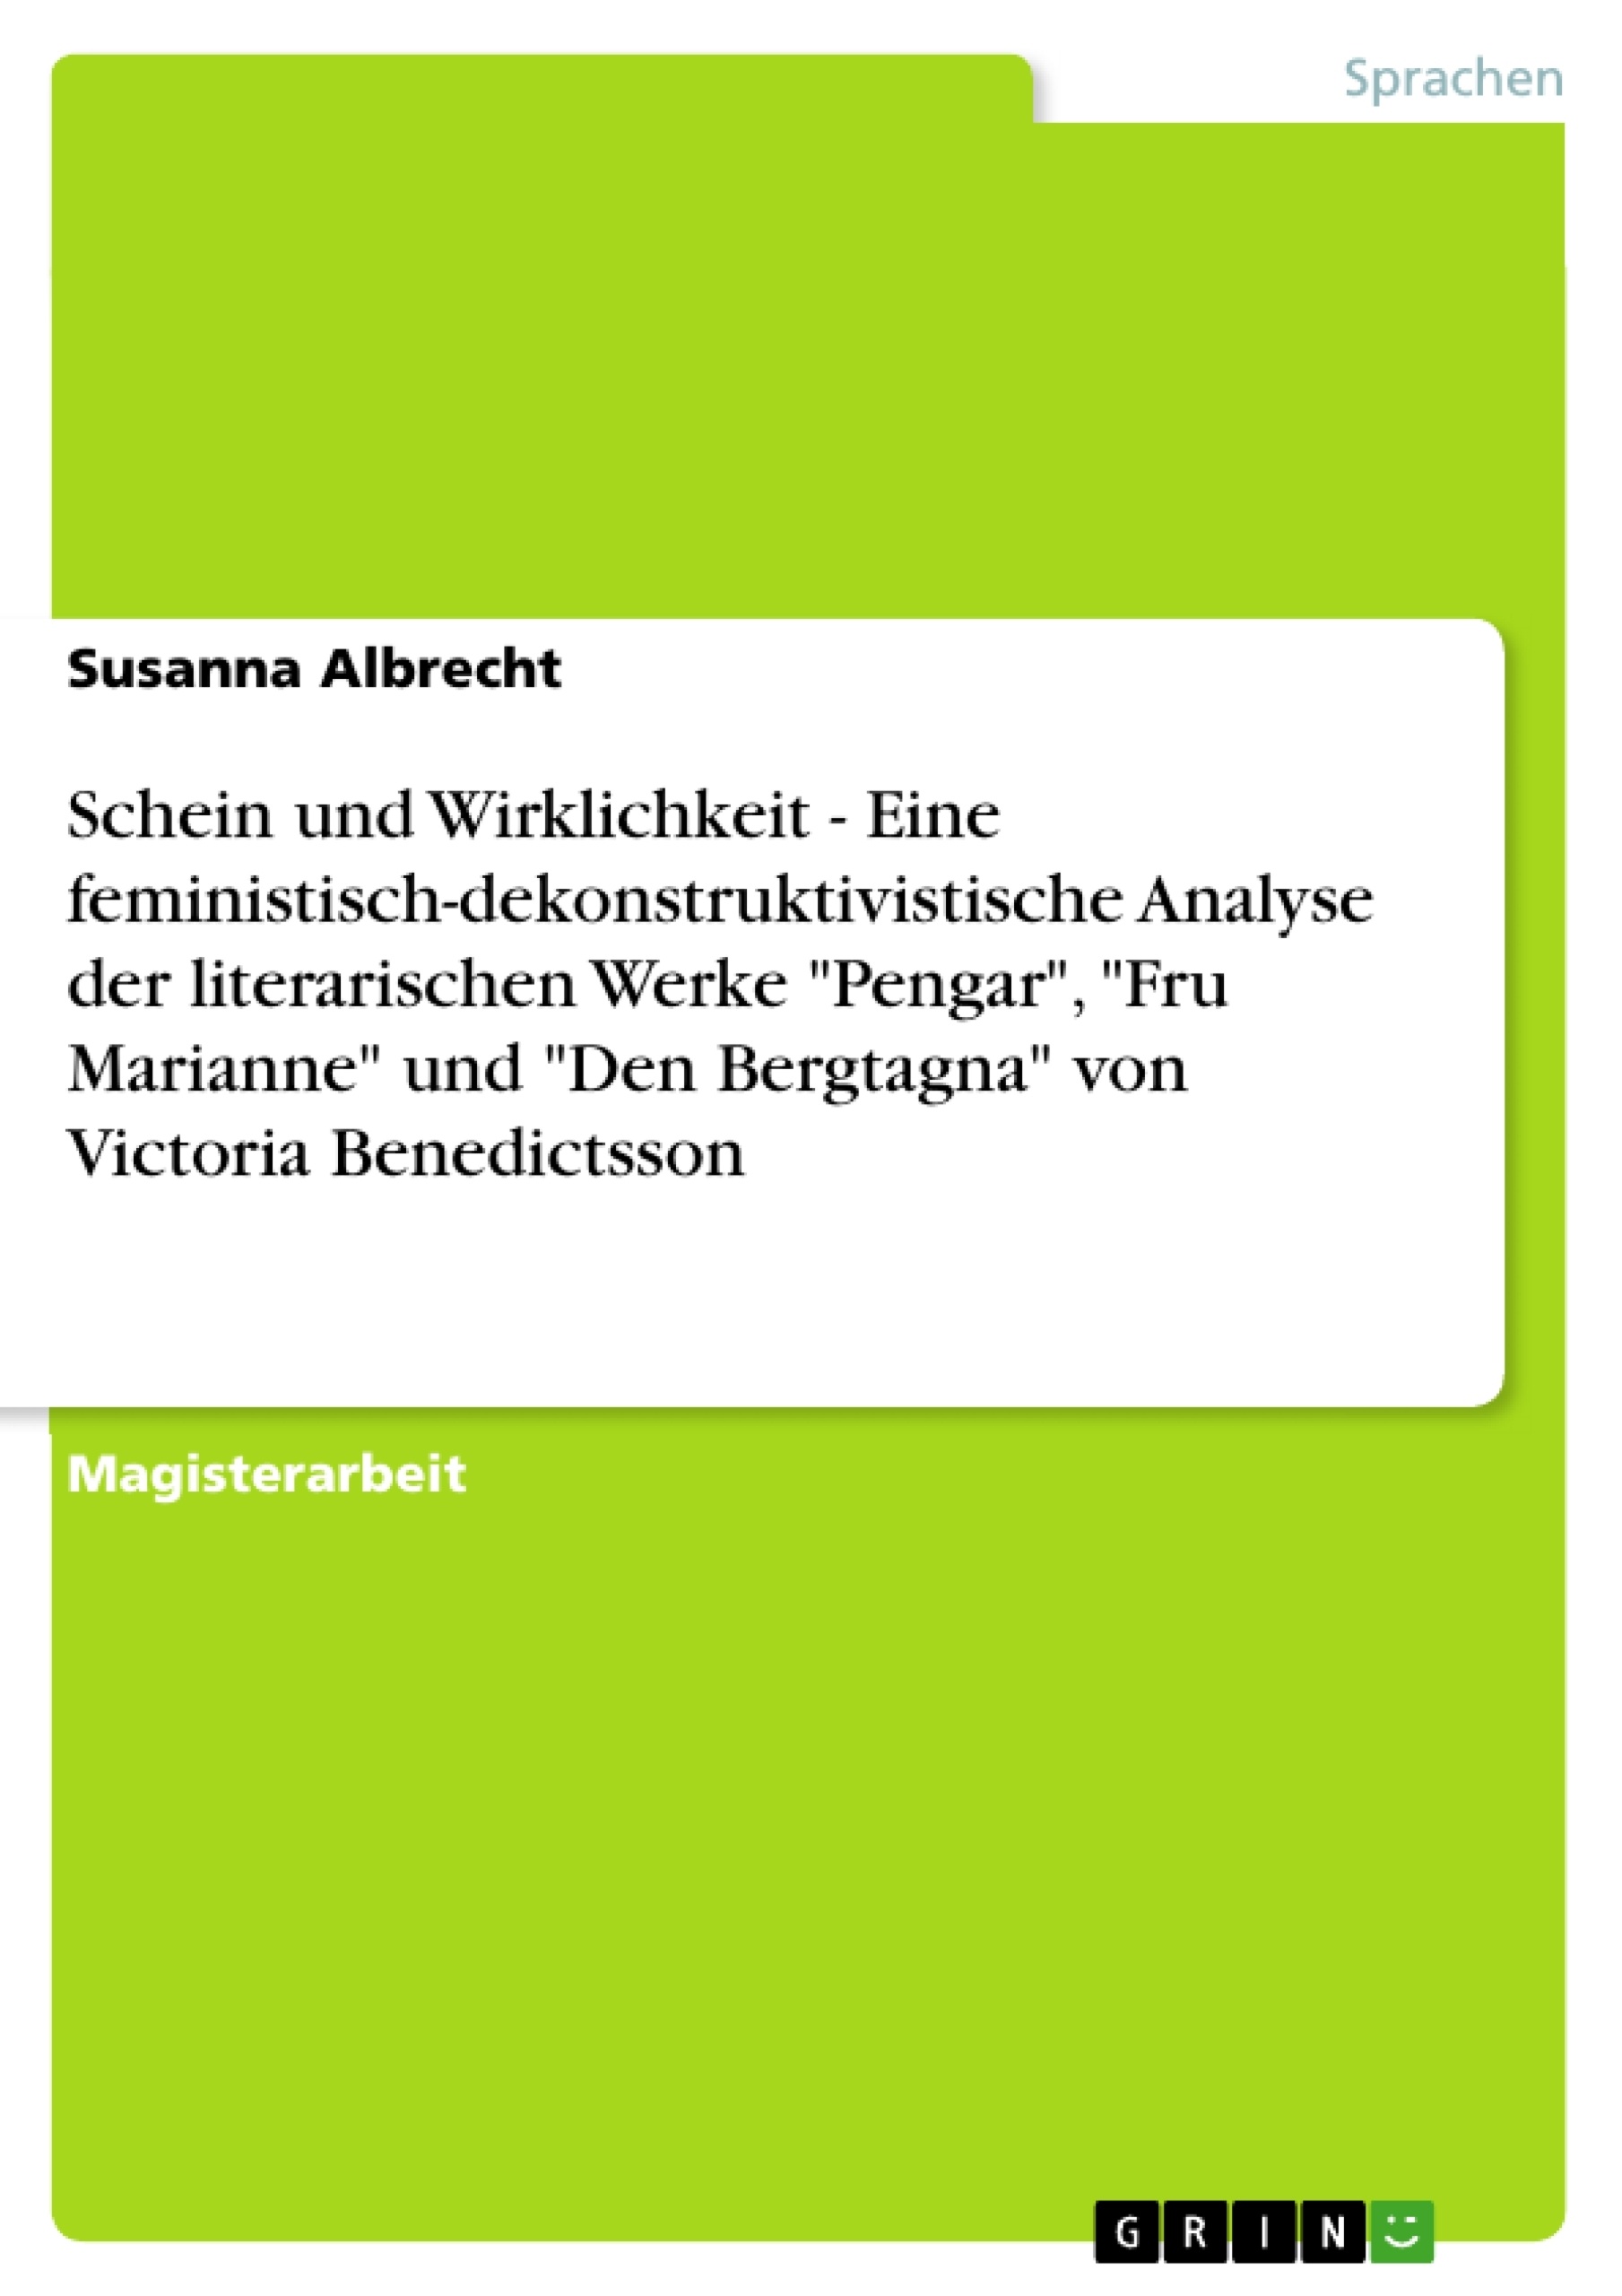 Titre: Schein und Wirklichkeit  -  Eine feministisch-dekonstruktivistische Analyse der literarischen Werke "Pengar", "Fru Marianne" und "Den Bergtagna" von Victoria Benedictsson 